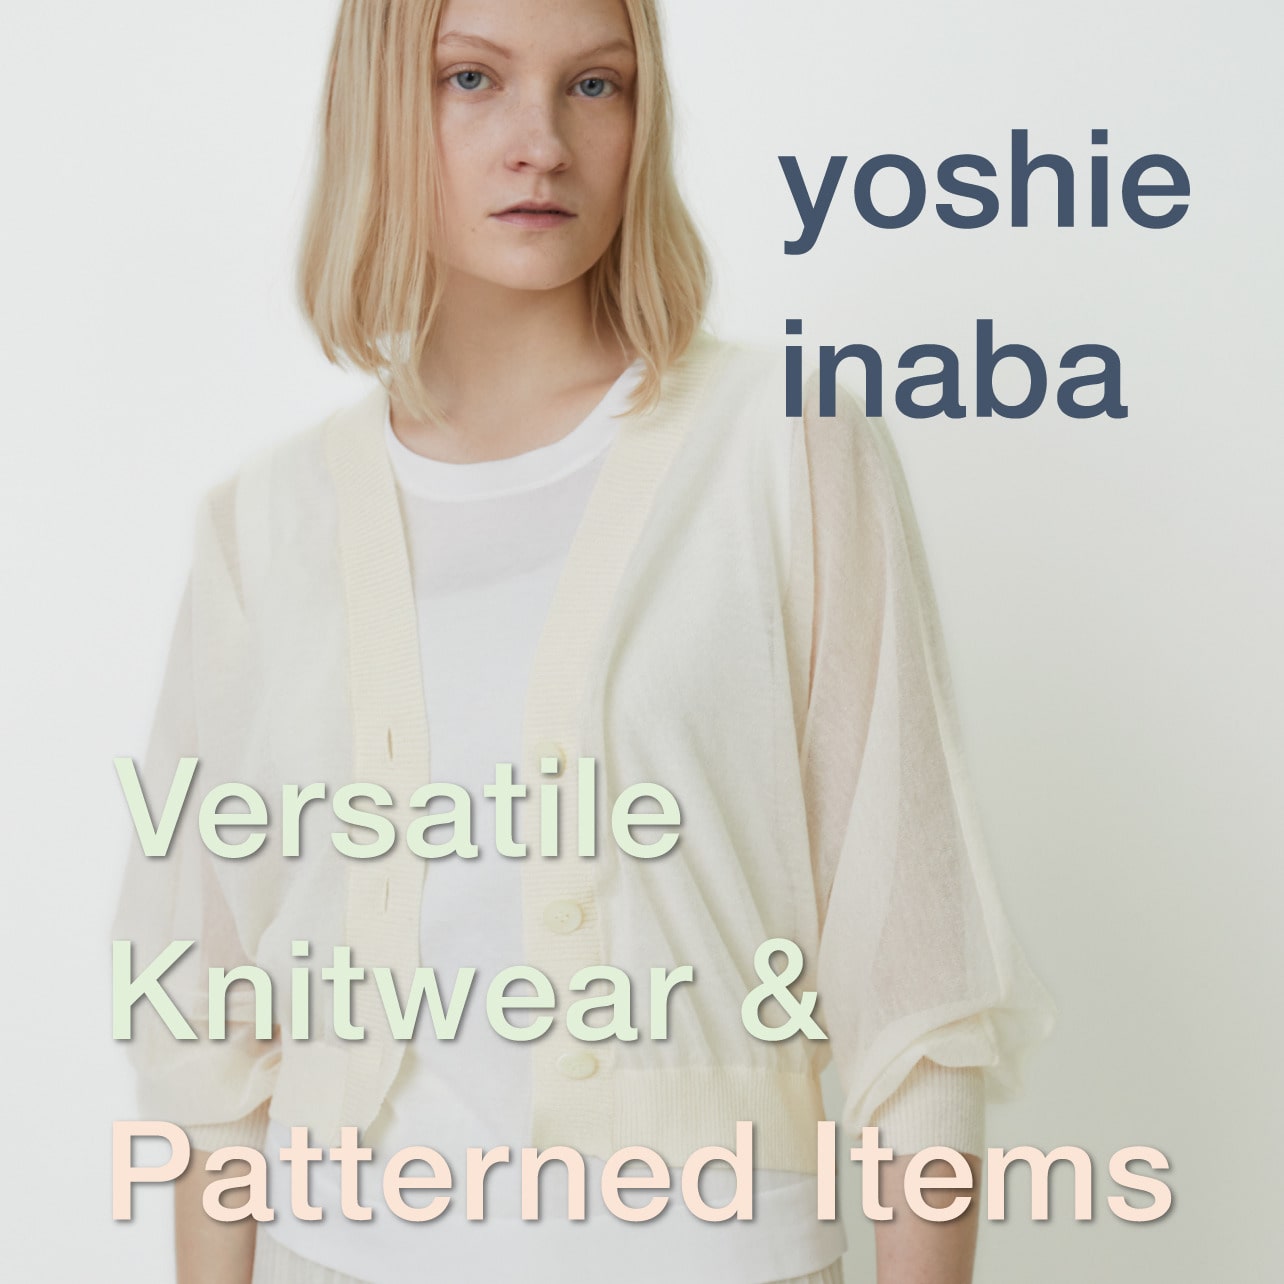 Vewsatile Knitwear & Patterned Items